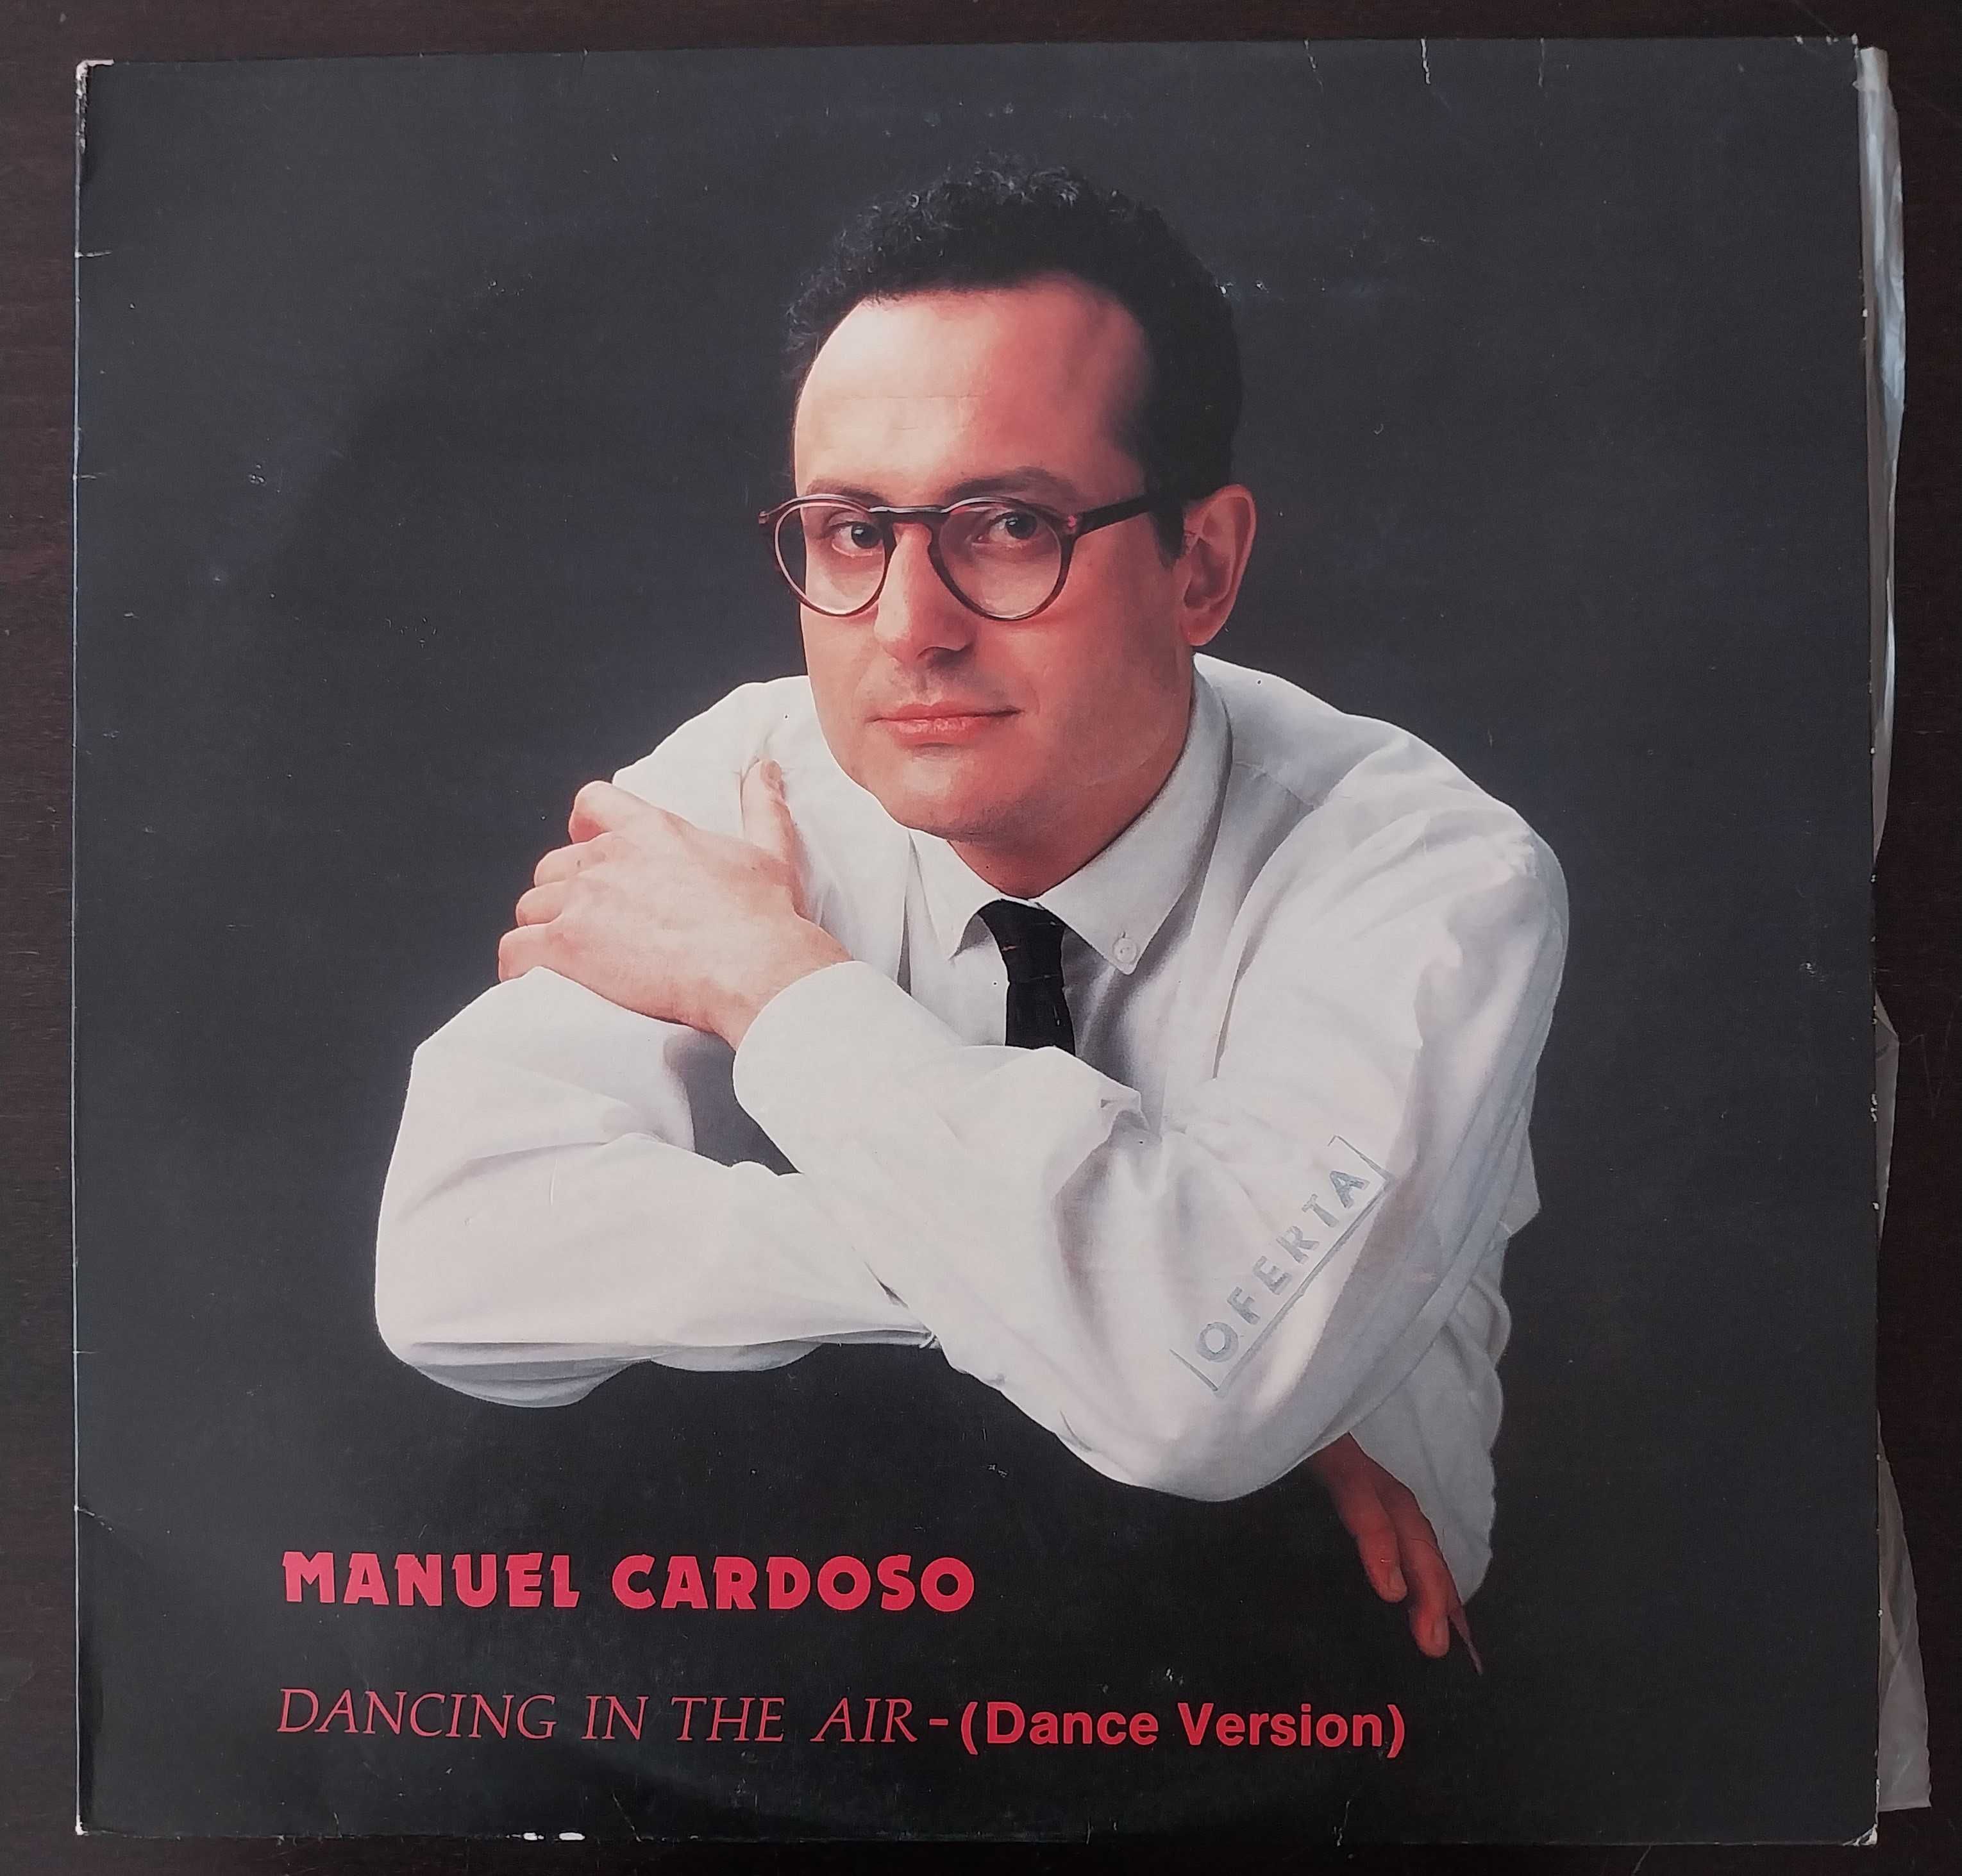 raro vinil: Manuel Cardoso “Dancing in the air”